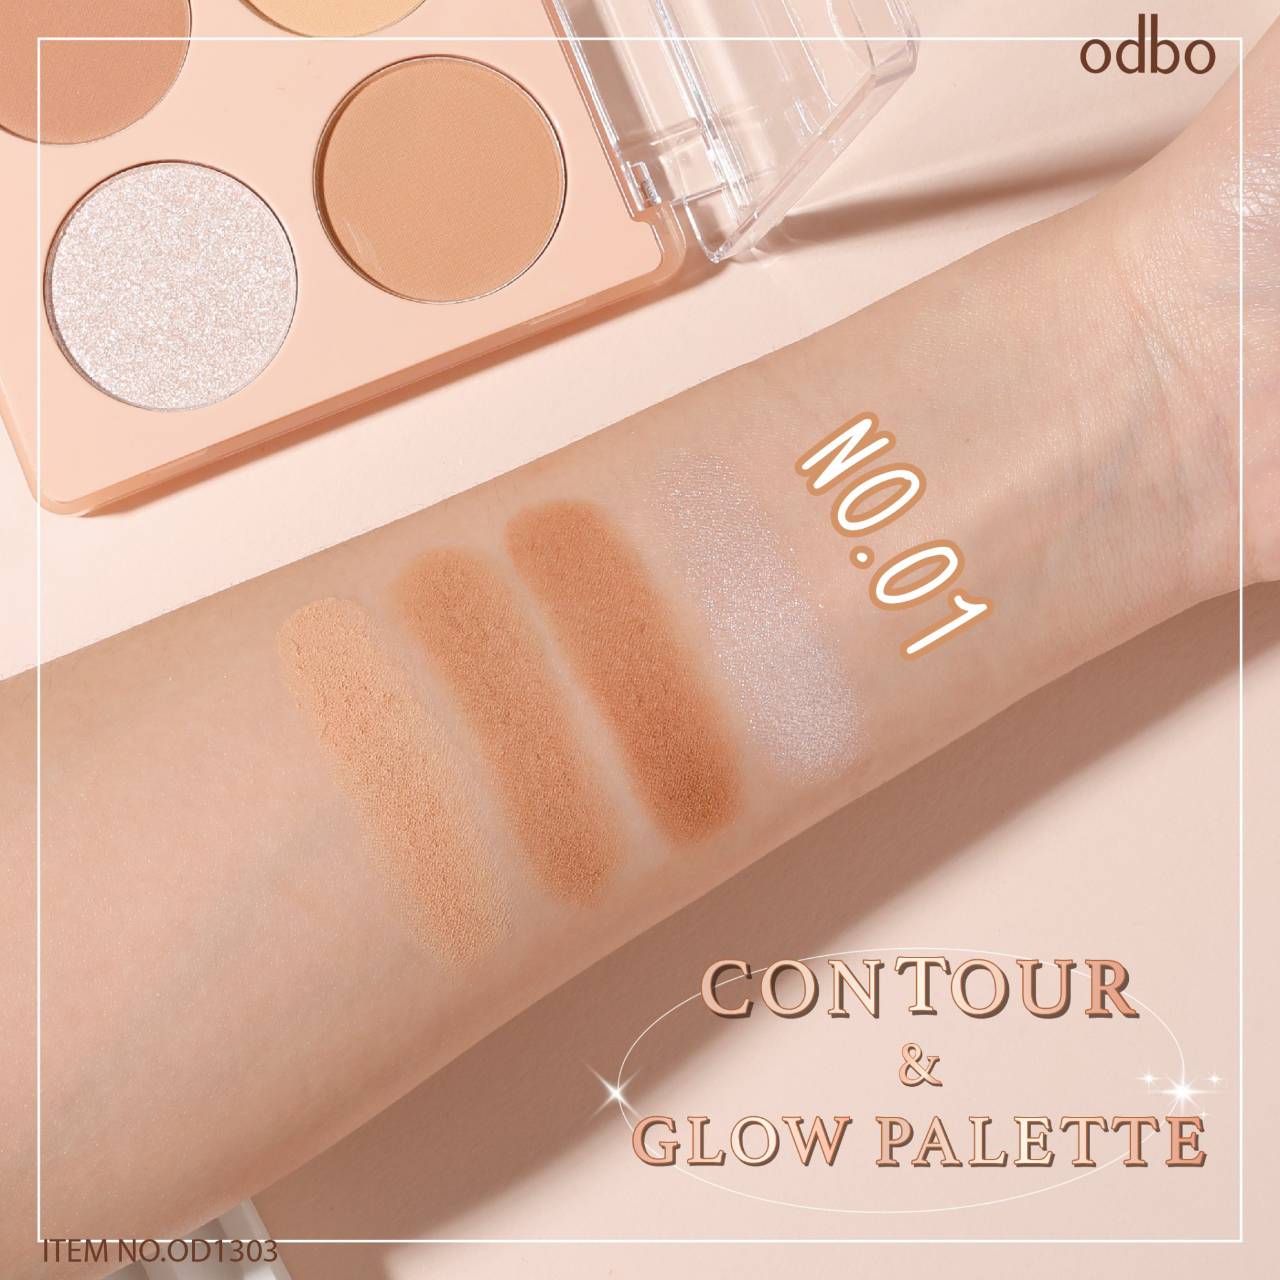 Odbo Contour & Glow Palette #OD1303 : โอดีบีโอ คอนทัวร์ แอนด์ โกลว ไฮไลท์ พาเลท x 1 ชิ้น